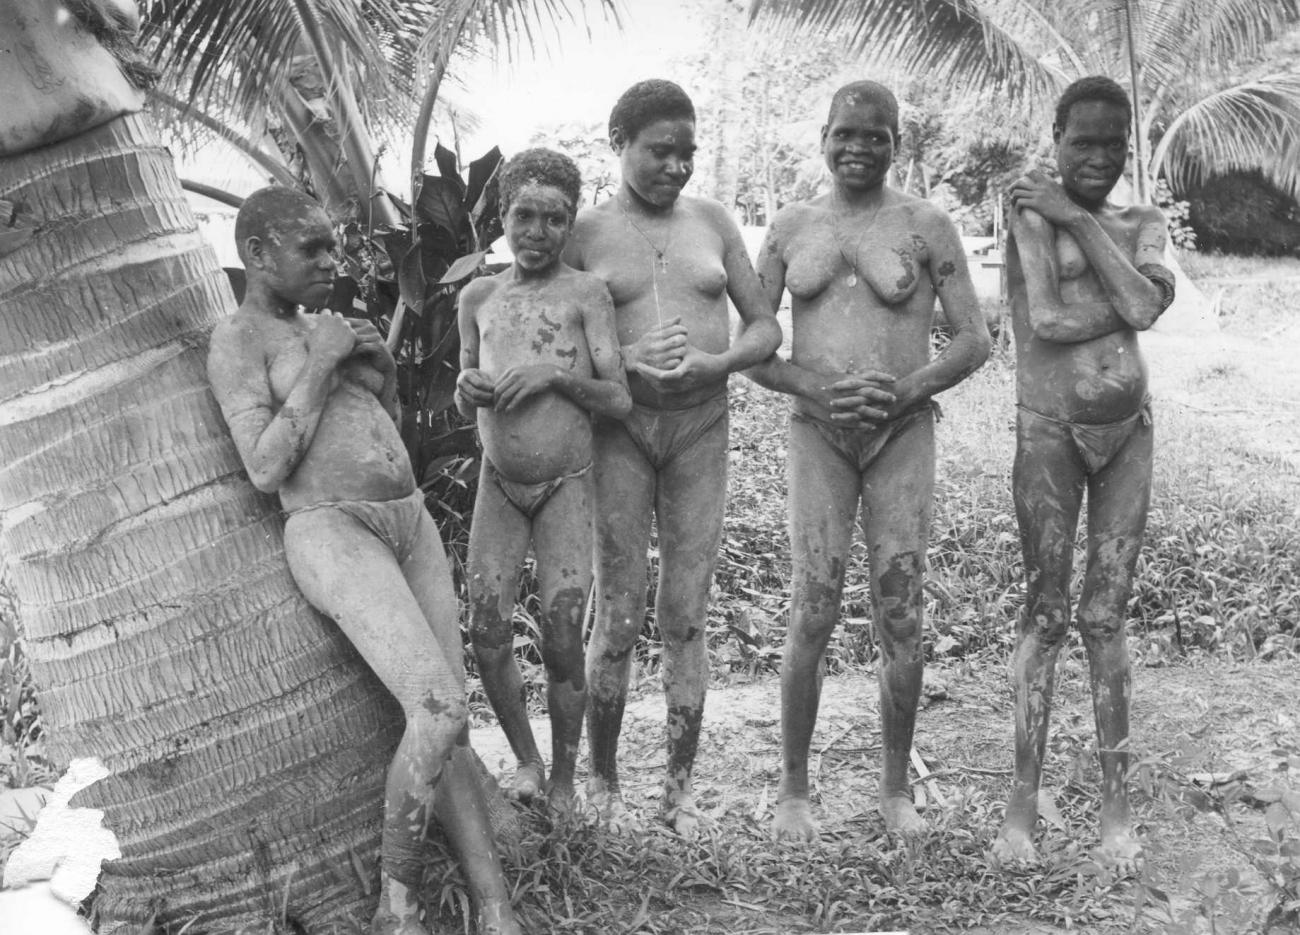 BD/66/307 - 
Vrouwen uit Zuid Nieuw Guinea  
